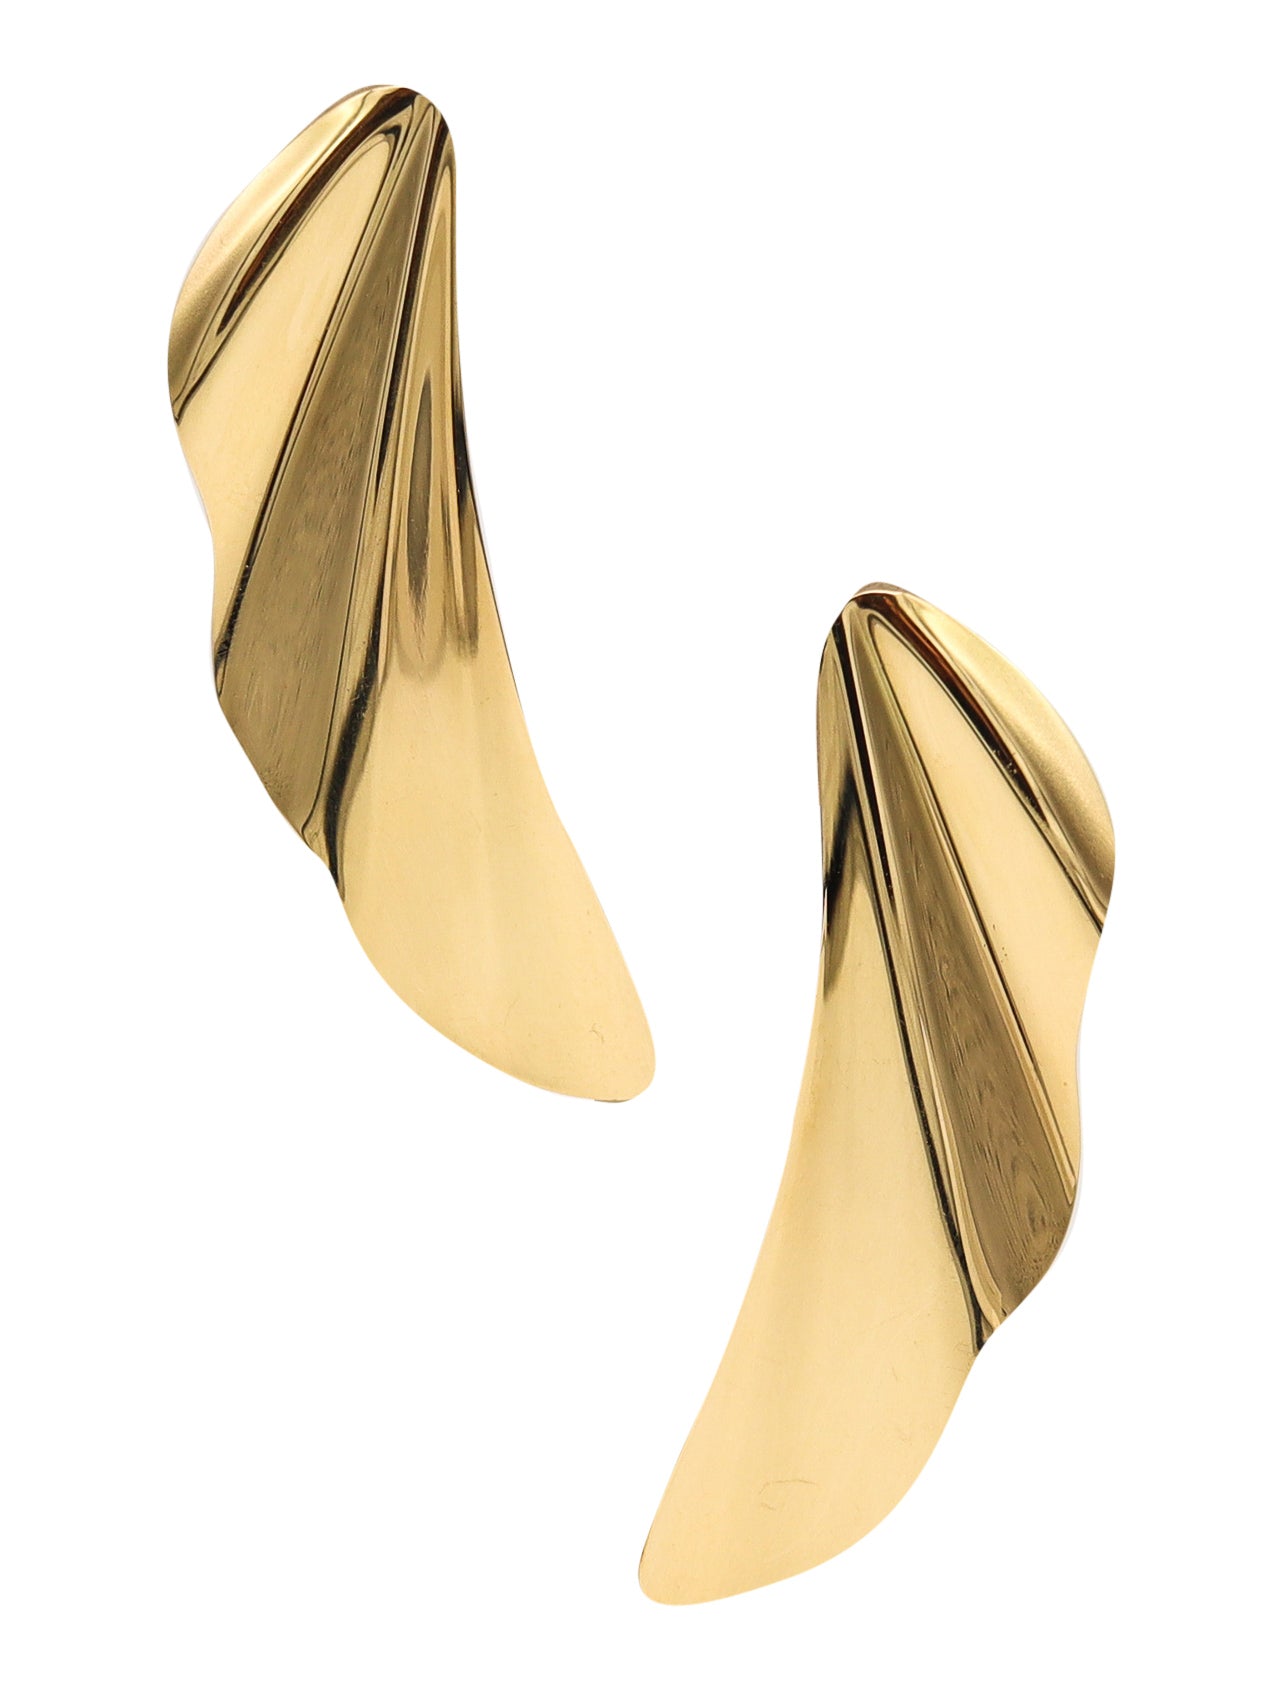 *Tiffany & Co by Elsa Peretti High Tide Angel Wings Draped Earrings in 18 kt Yellow Gold